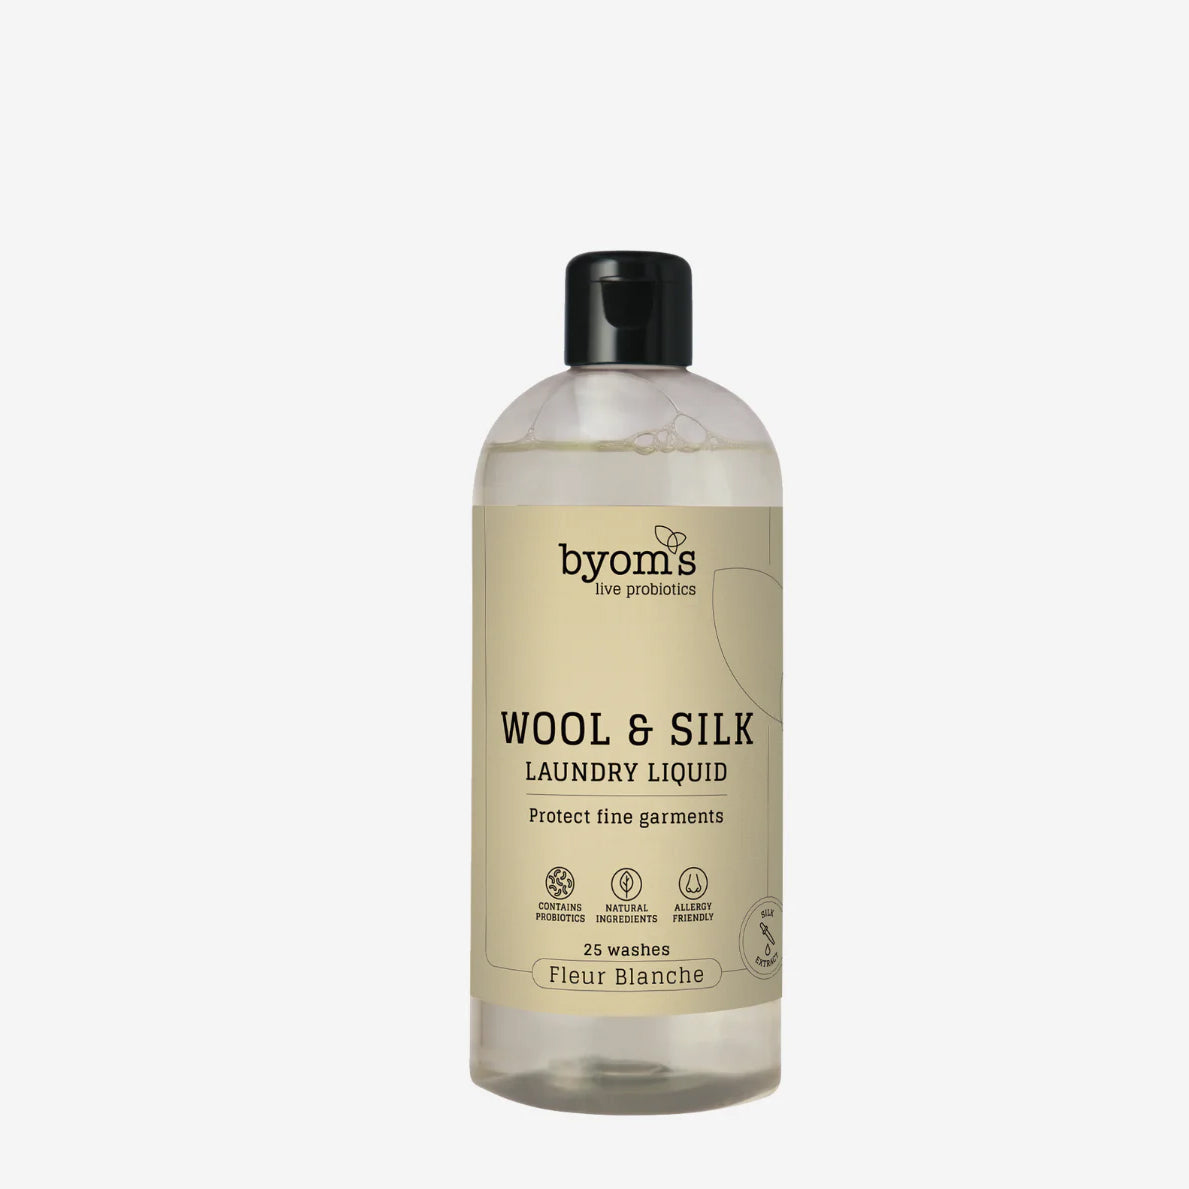 Billede af Wool & Silk Laundry Liquid, No Perfumes, 400 ml.